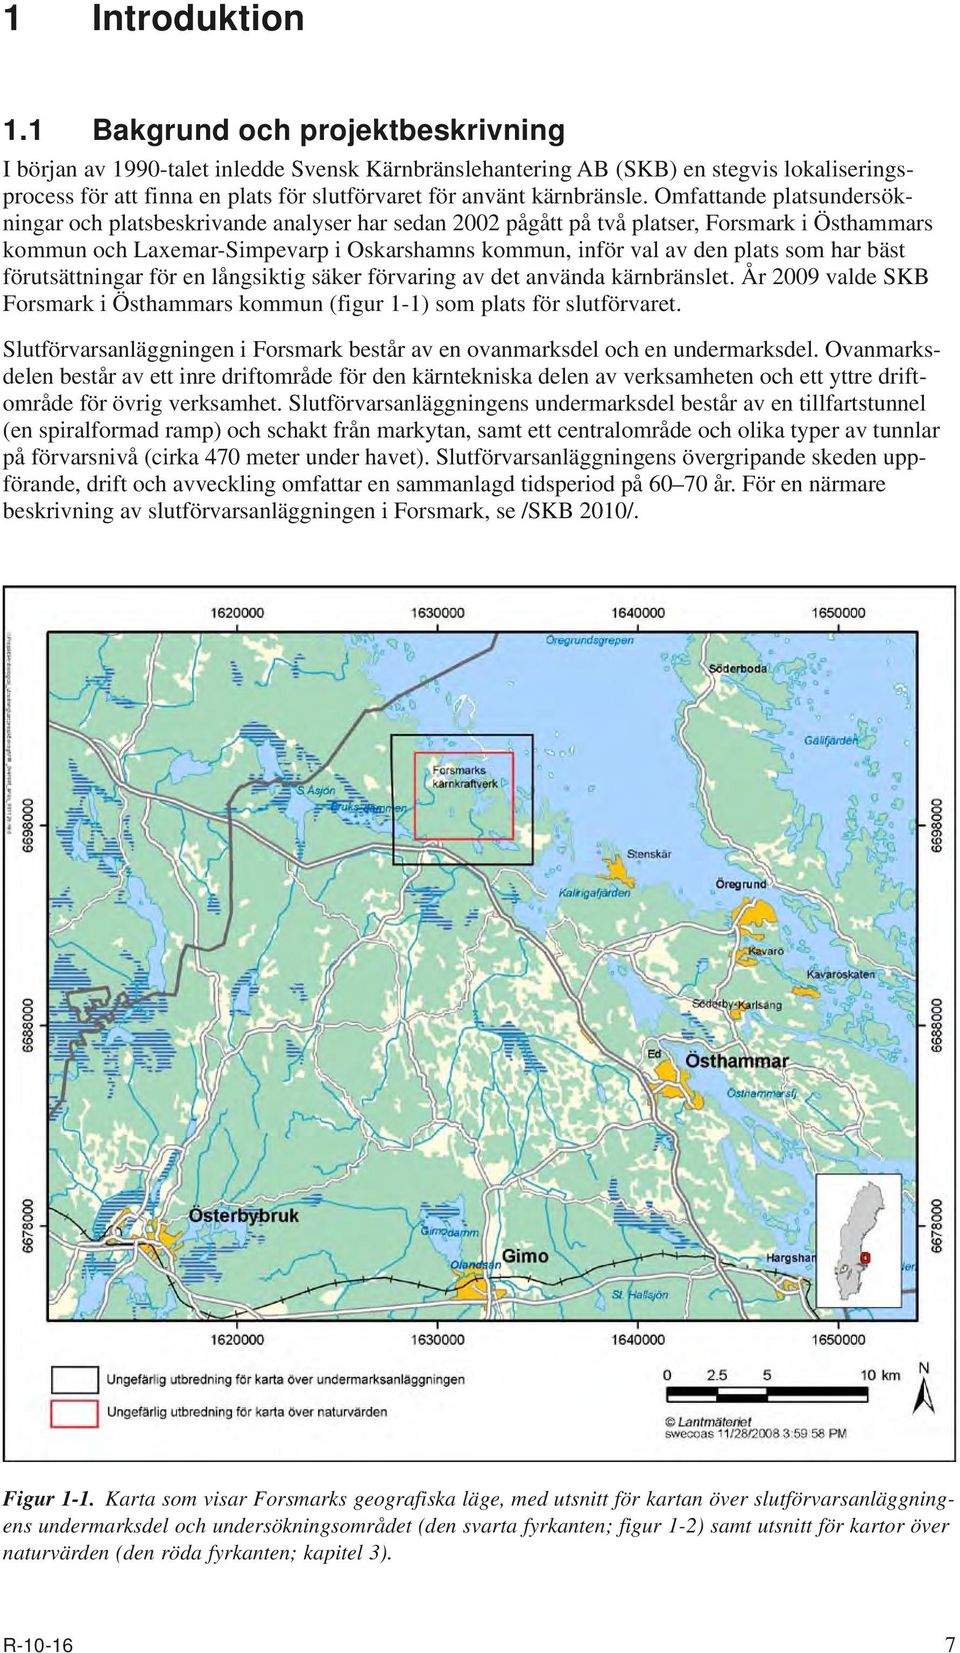 Omfattande platsundersökningar och platsbeskrivande analyser har sedan 2002 pågått på två platser, Forsmark i Östhammars kommun och Laxemar-Simpevarp i Oskarshamns kommun, inför val av den plats som